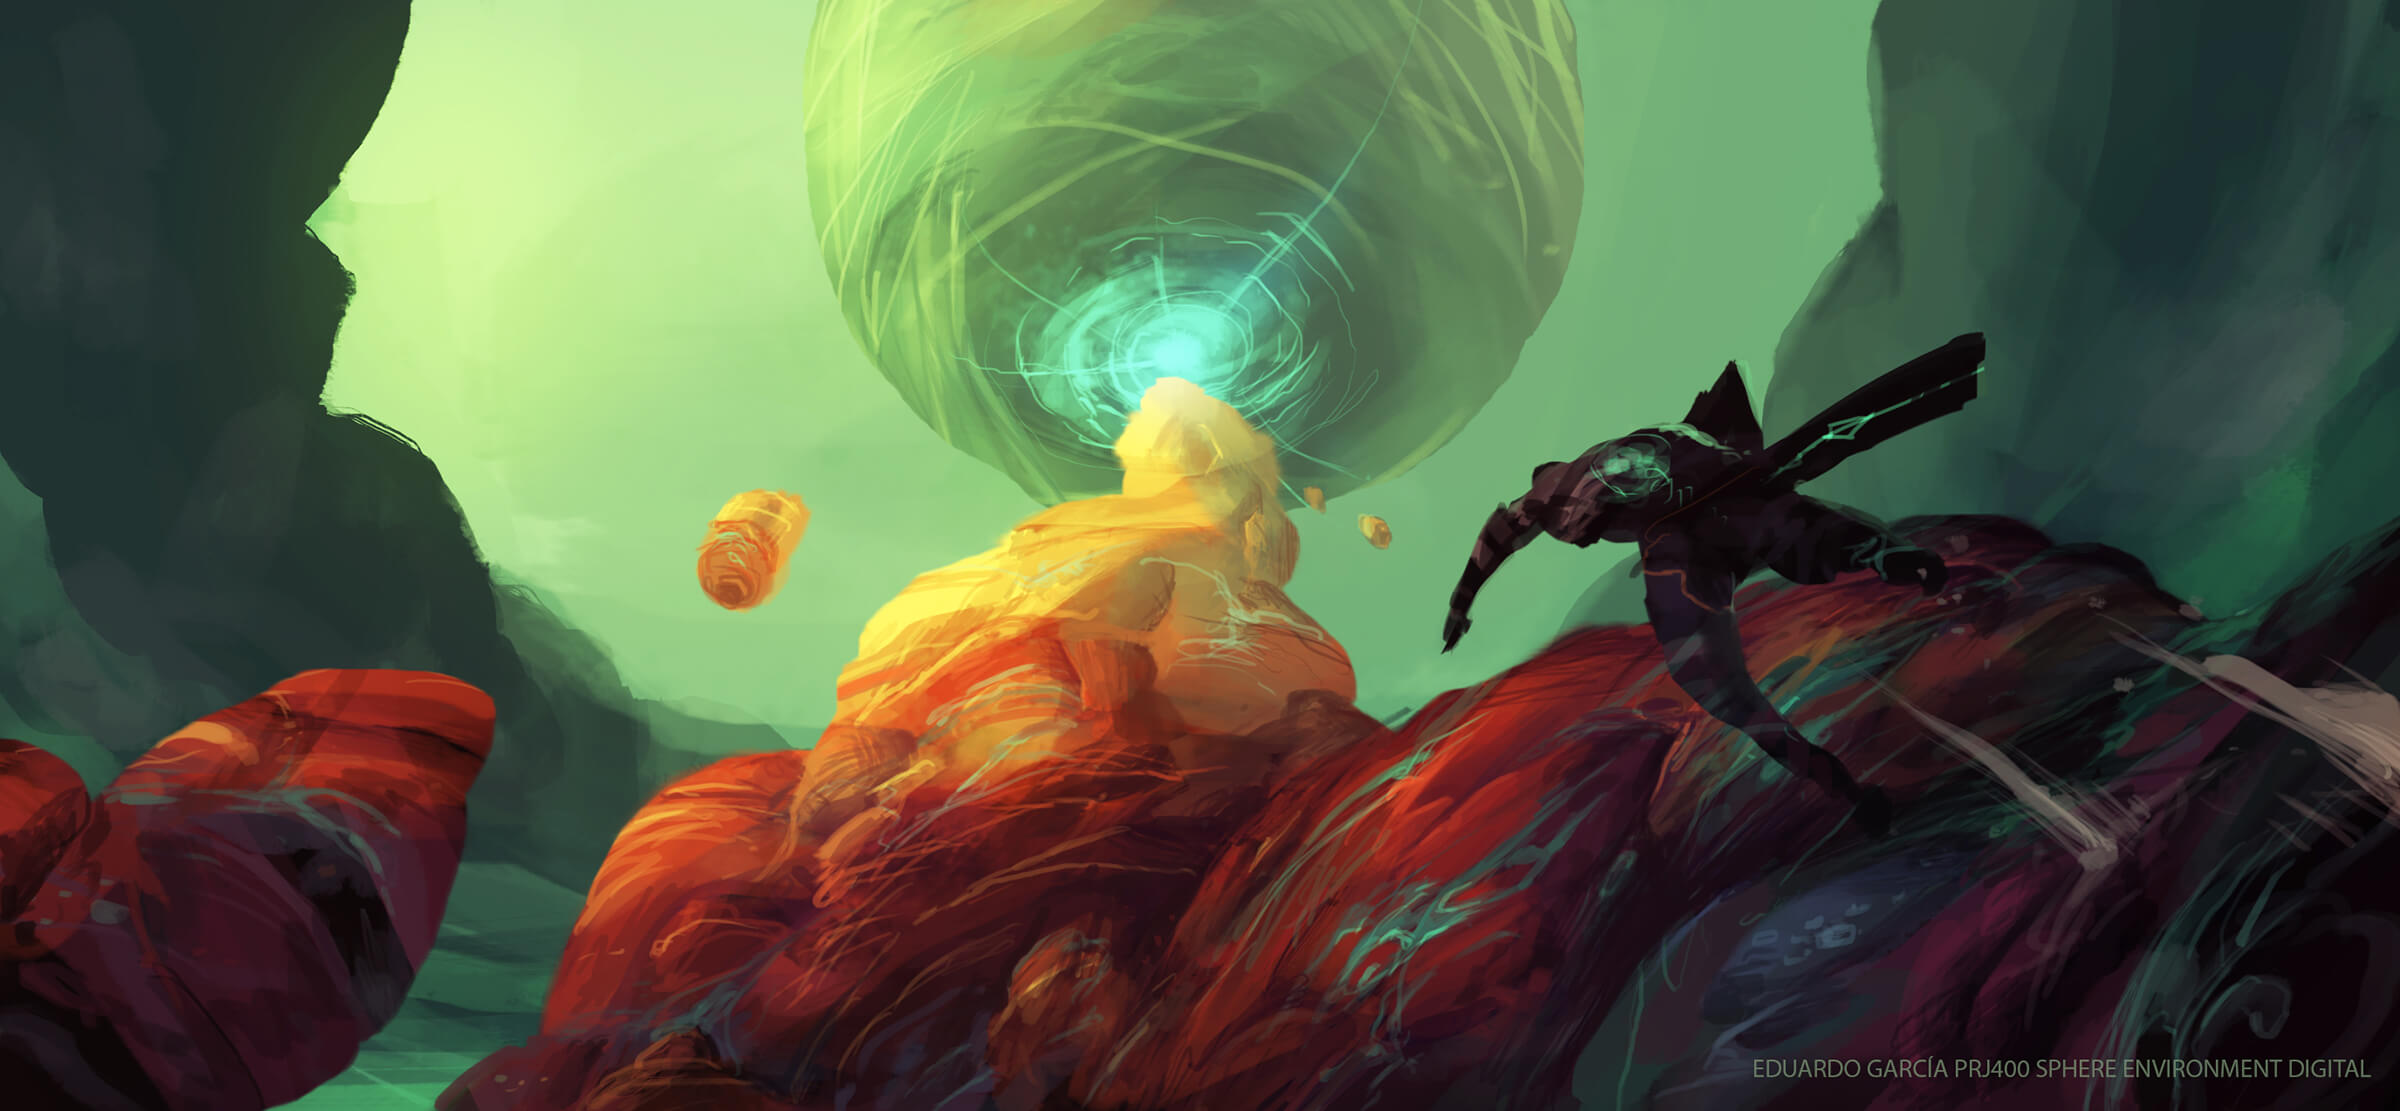 Una figura sube por un afloramiento de piedra multicolor hacia una esfera pedregosa que cuelga precariamente sobre un cielo alienígena verde y brumoso.